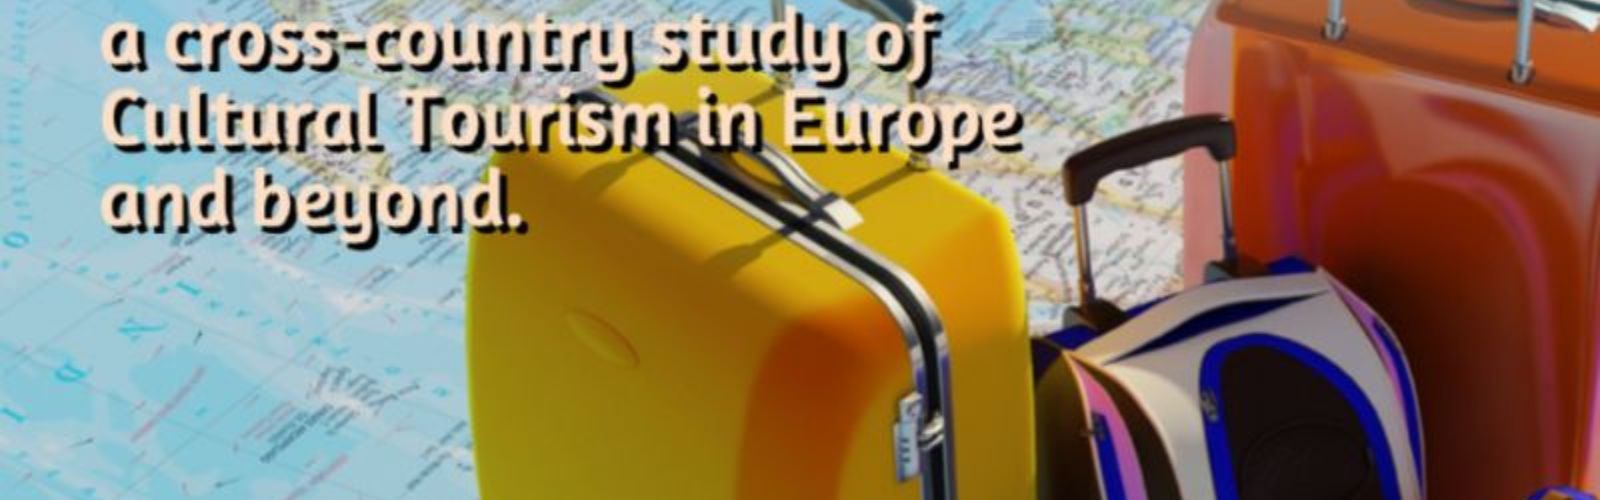 Progetto Spot: uno studio sulle dinamiche del turismo culturale in Europa